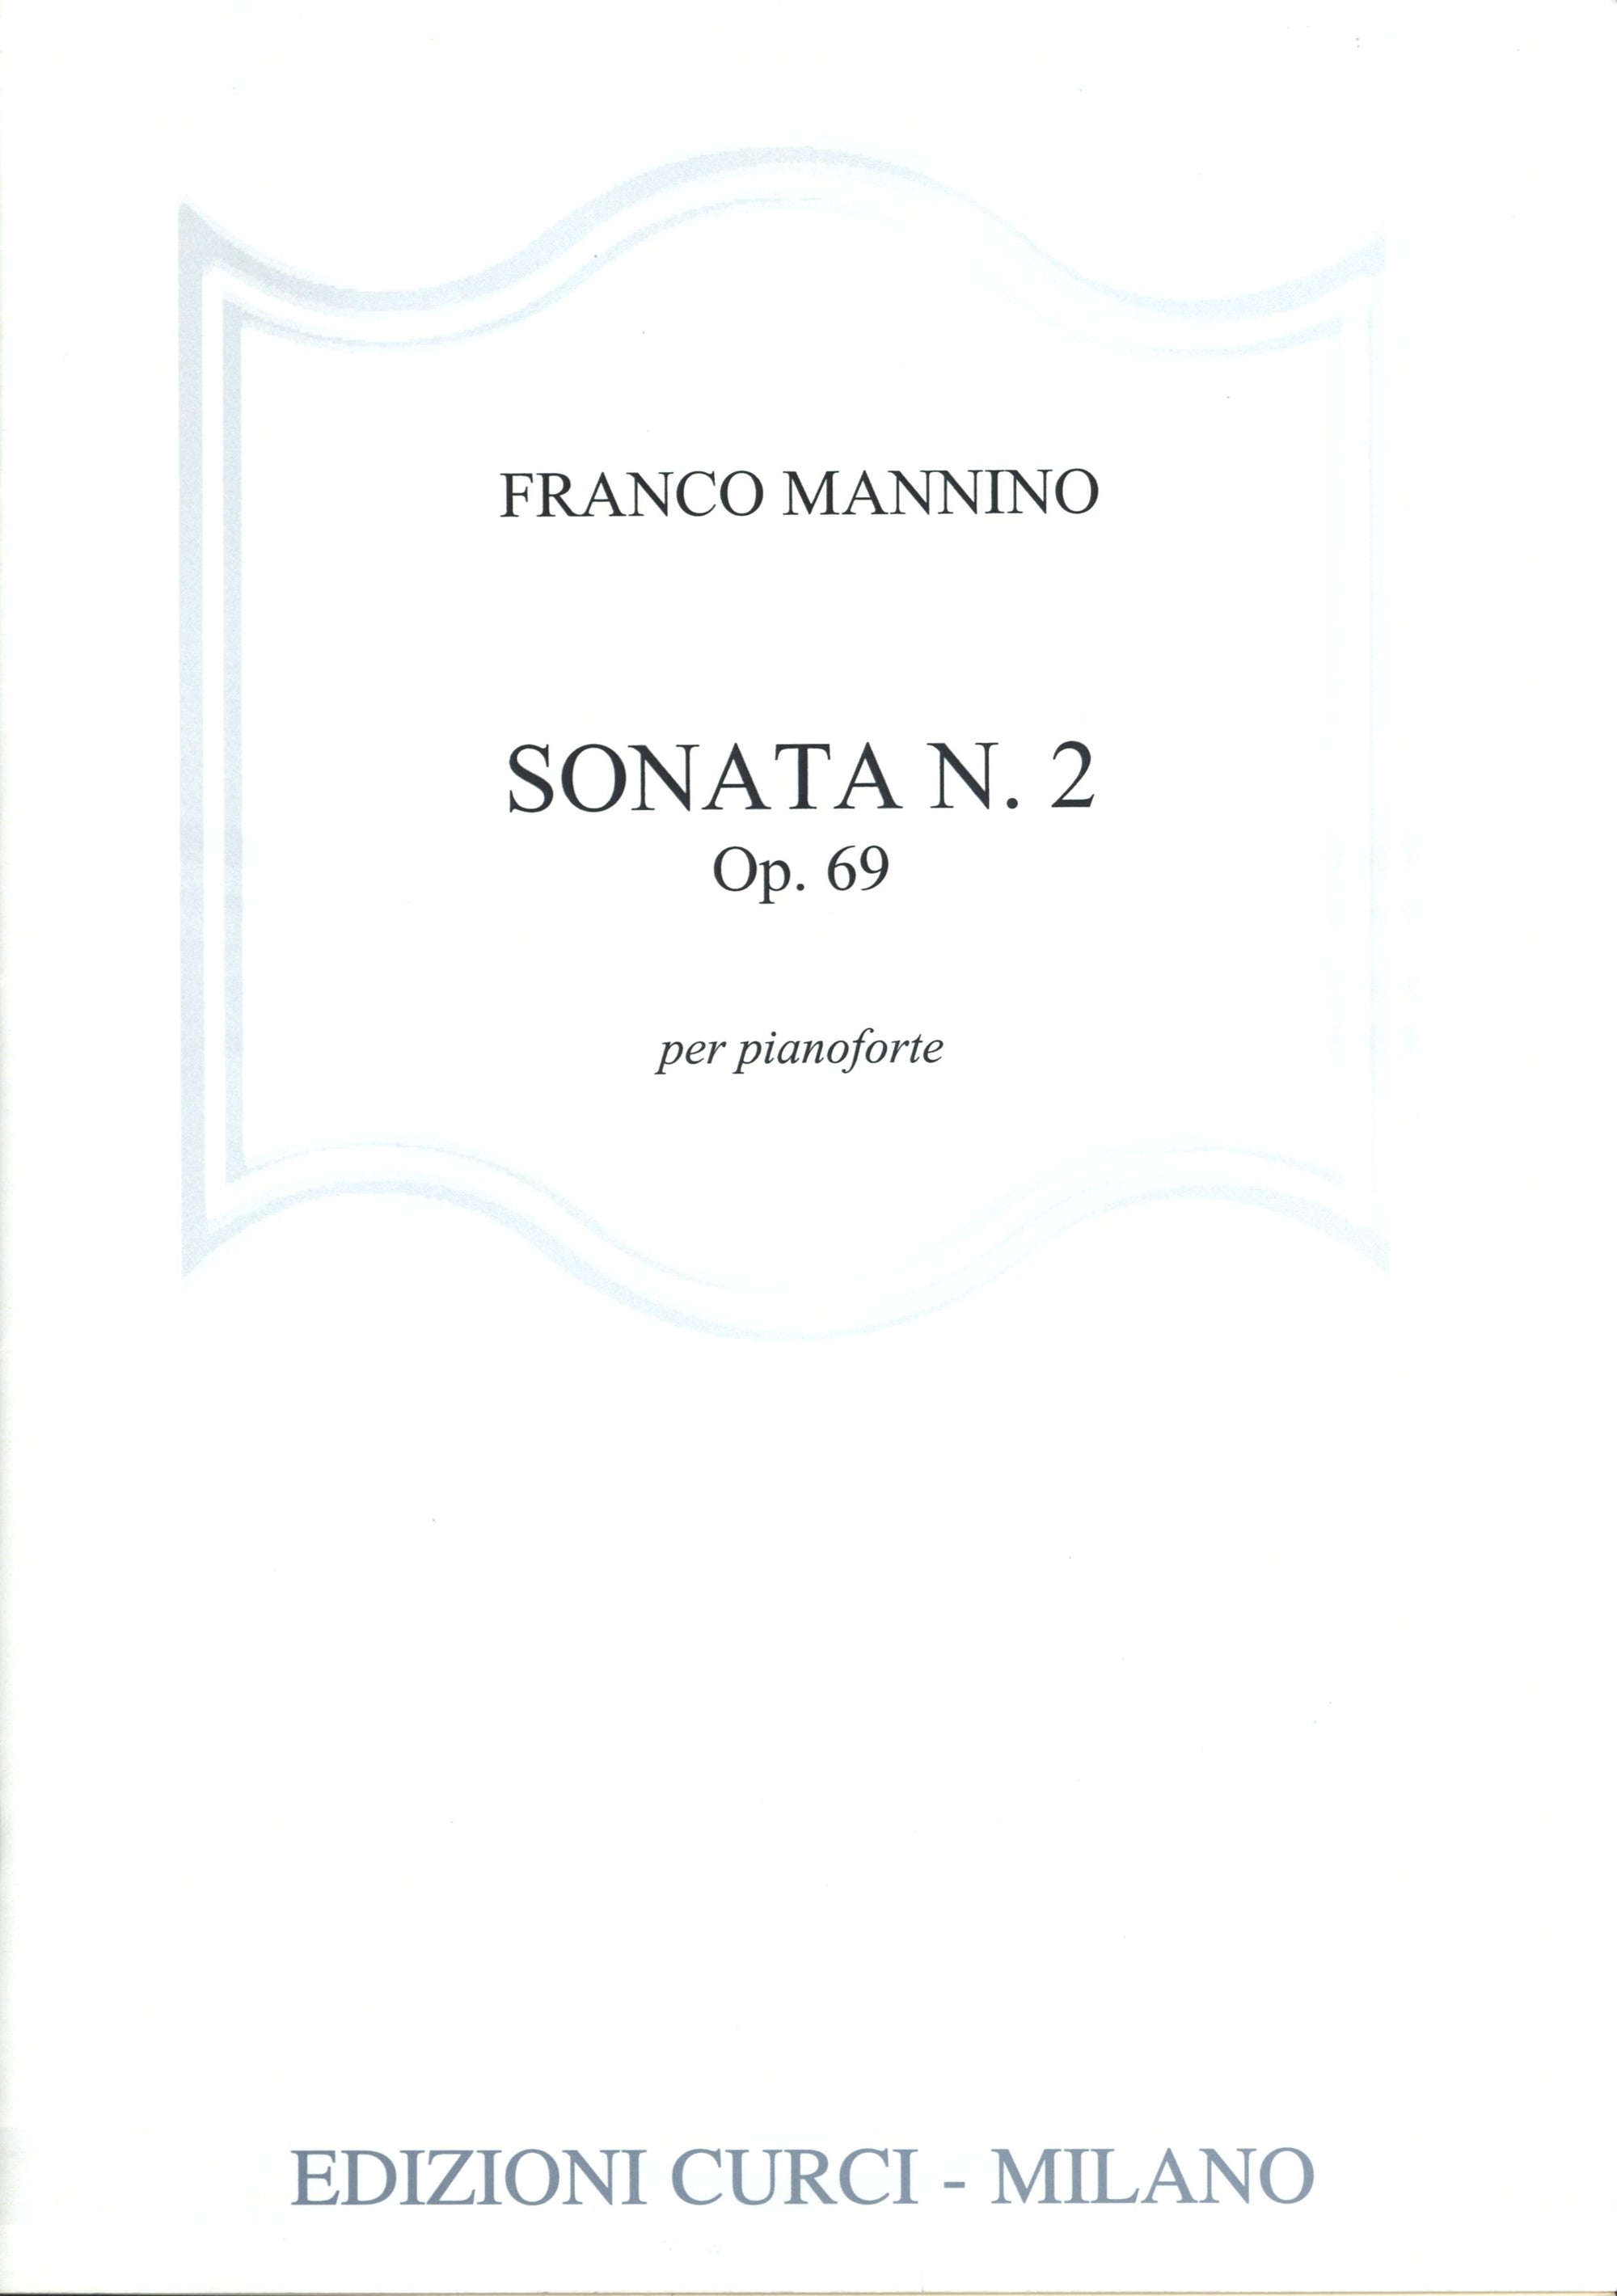 Mannino: Piano Sonata No. 2, Op. 69